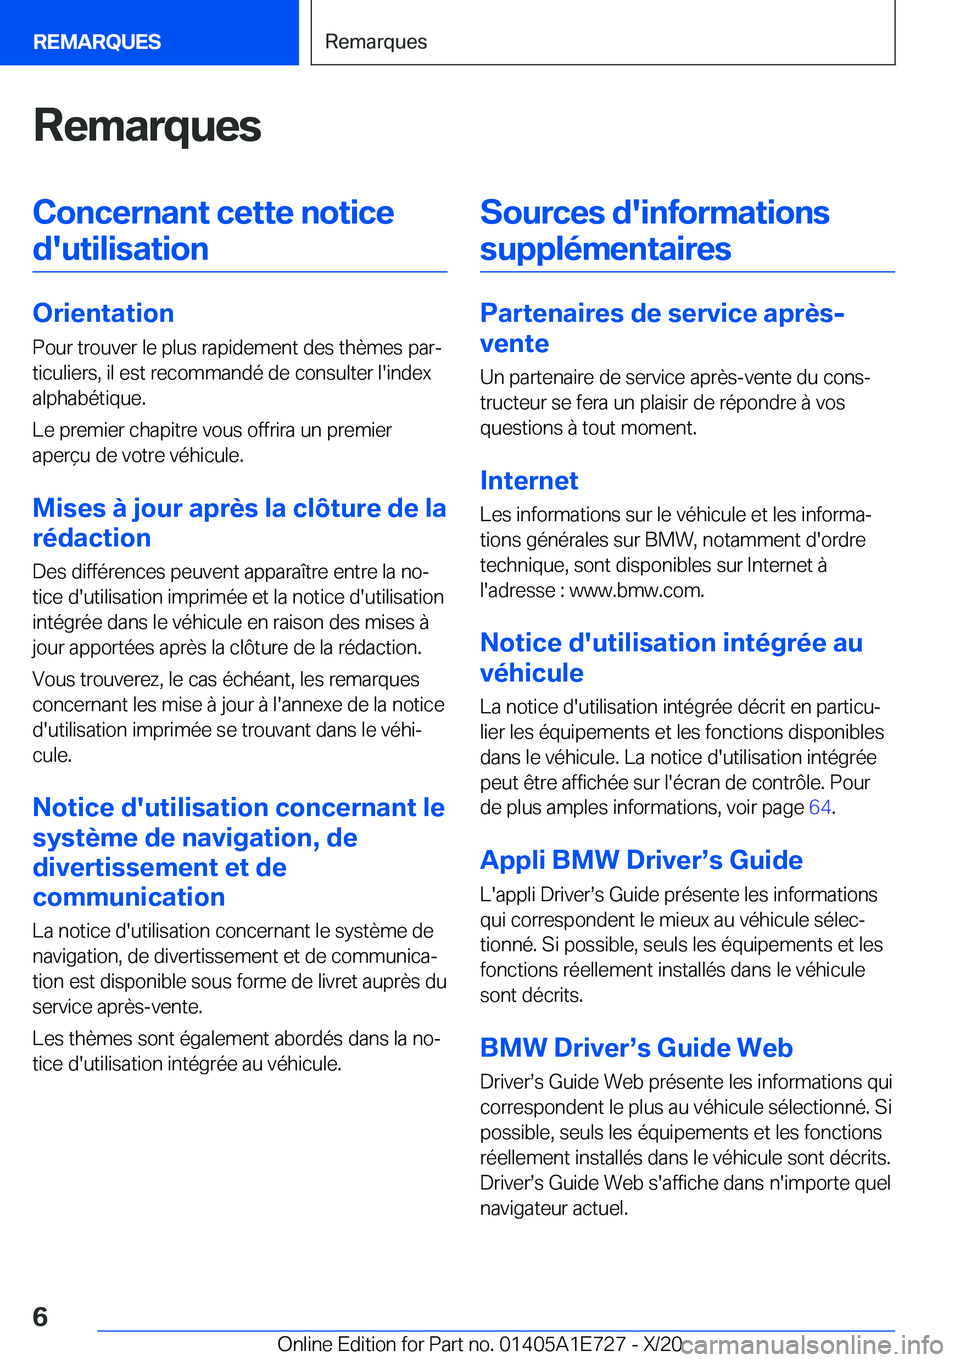 BMW X2 2021  Notices Demploi (in French) �R�e�m�a�r�q�u�e�s�C�o�n�c�e�r�n�a�n�t��c�e�t�t�e��n�o�t�i�c�e�d�'�u�t�i�l�i�s�a�t�i�o�n
�O�r�i�e�n�t�a�t�i�o�n �P�o�u�r��t�r�o�u�v�e�r��l�e��p�l�u�s��r�a�p�i�d�e�m�e�n�t��d�e�s��t�h�è�m�